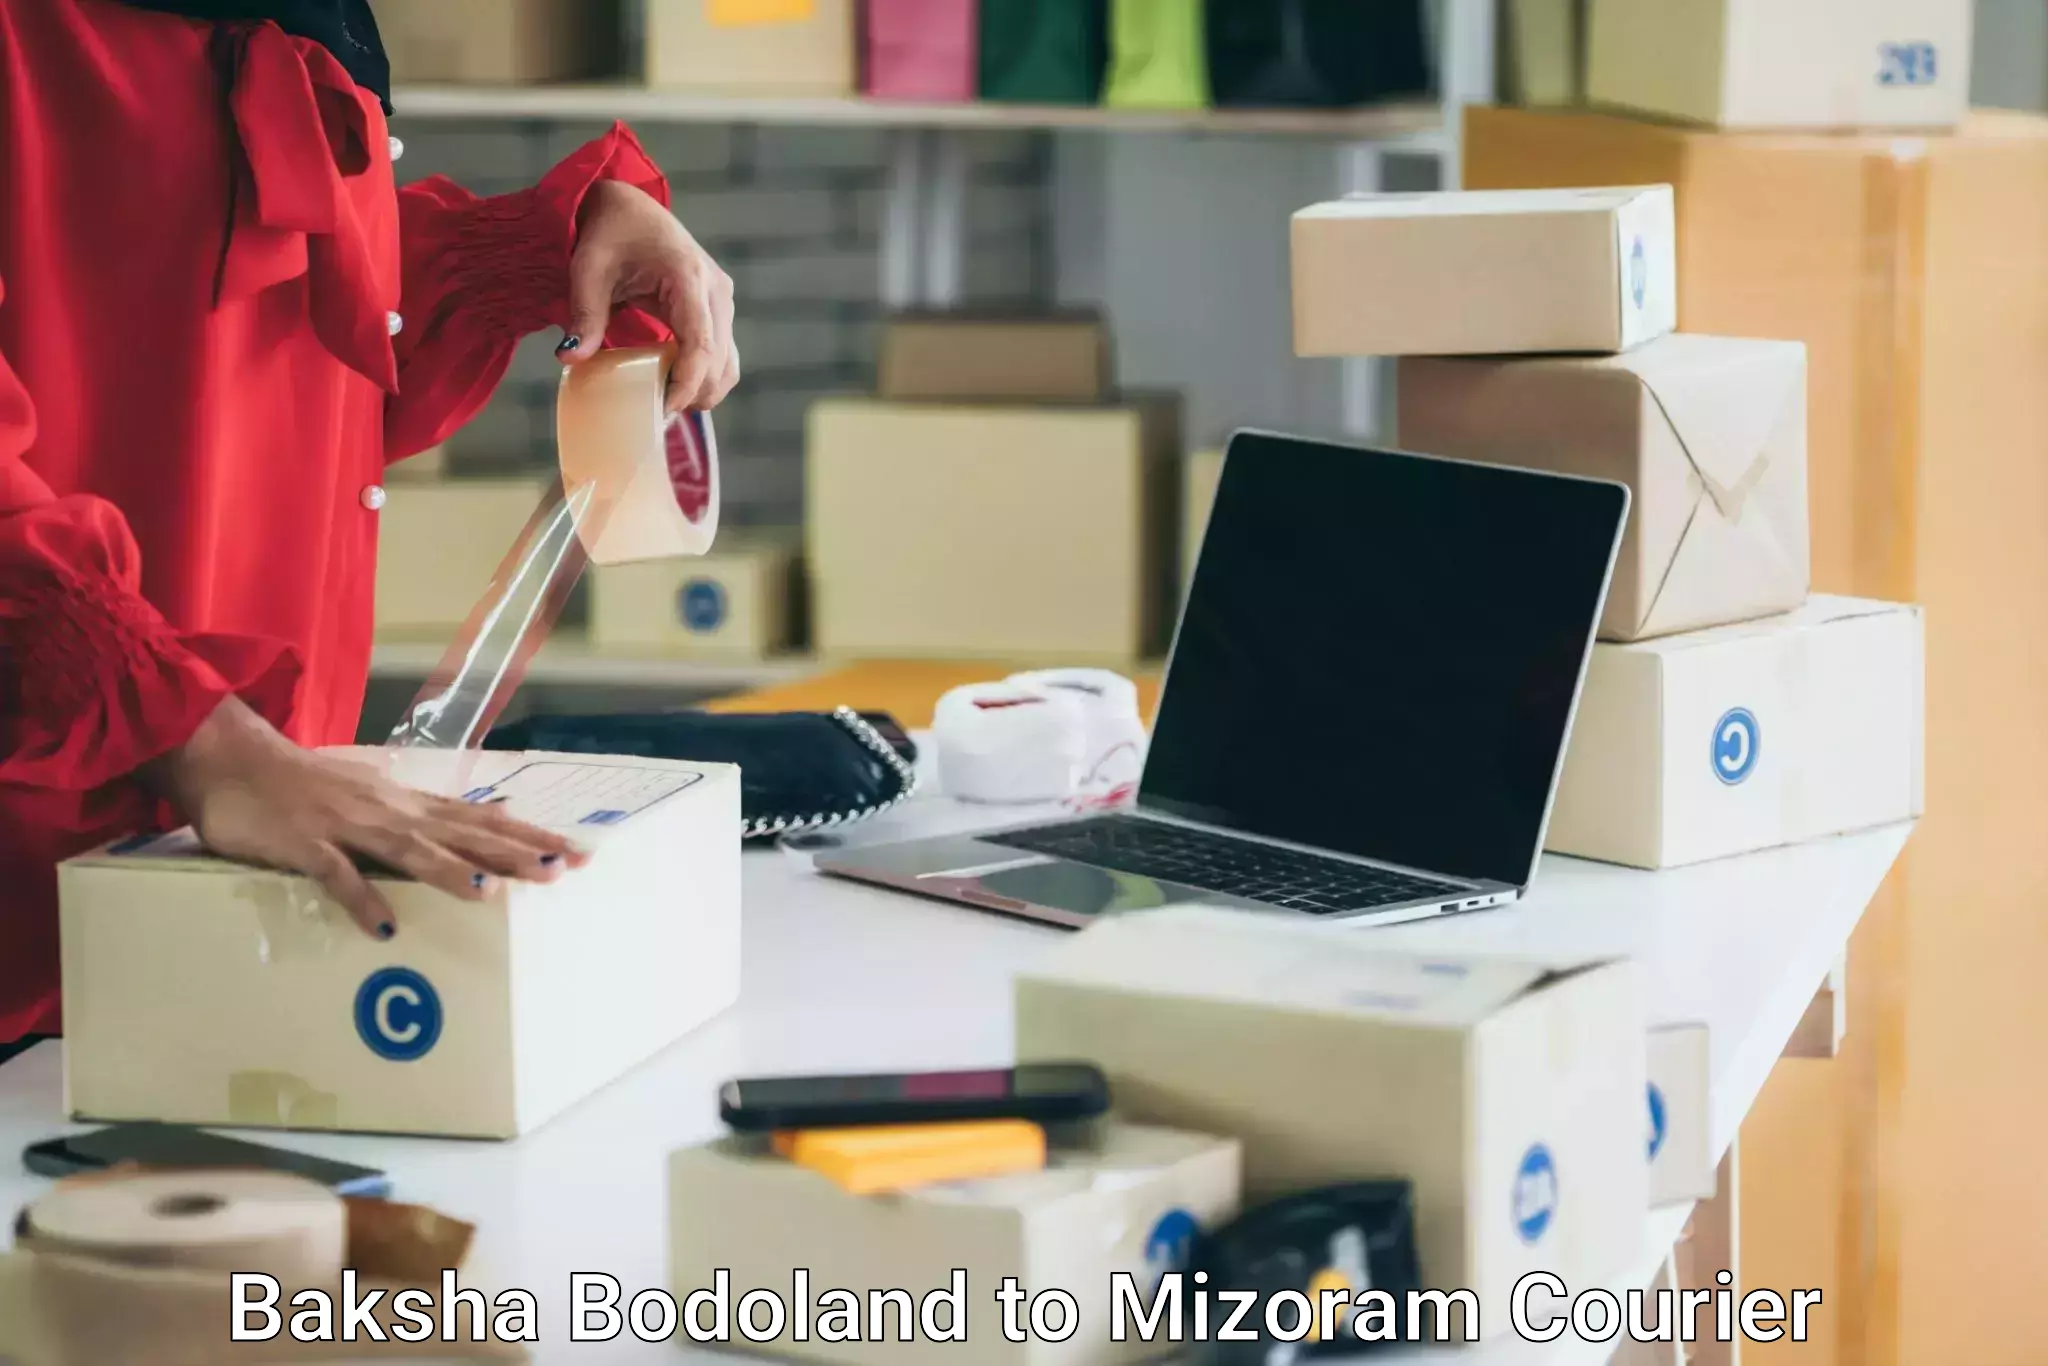 High-quality moving services Baksha Bodoland to Mizoram